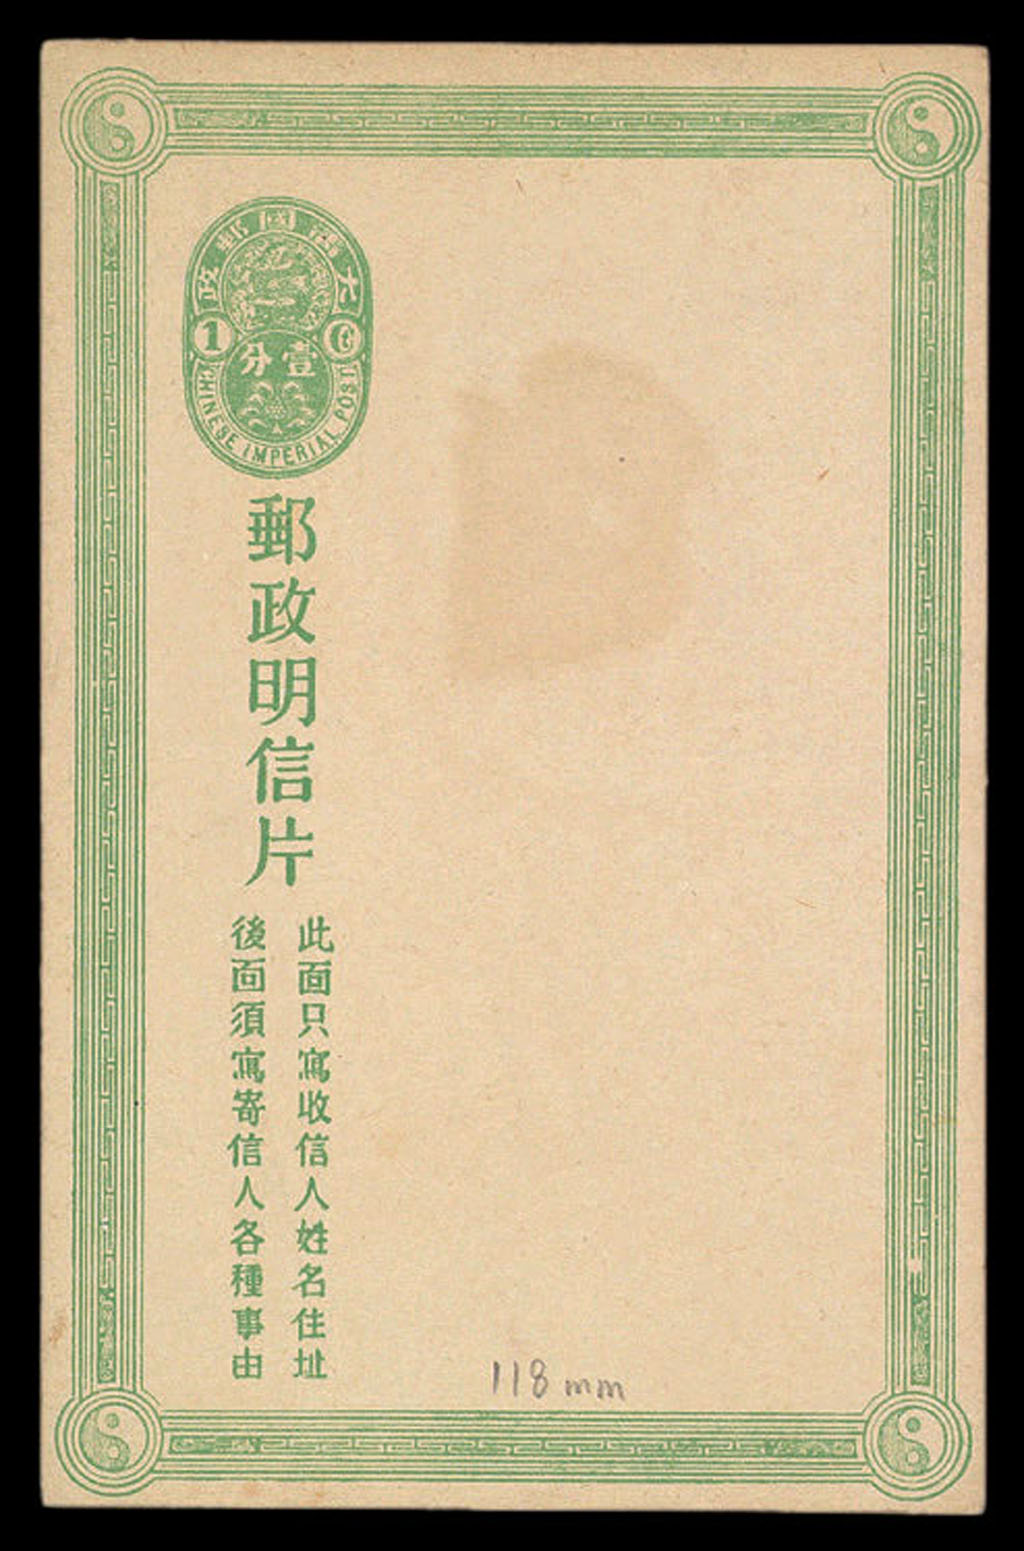 PS 1907年大清邮政第三次邮资明信片一件